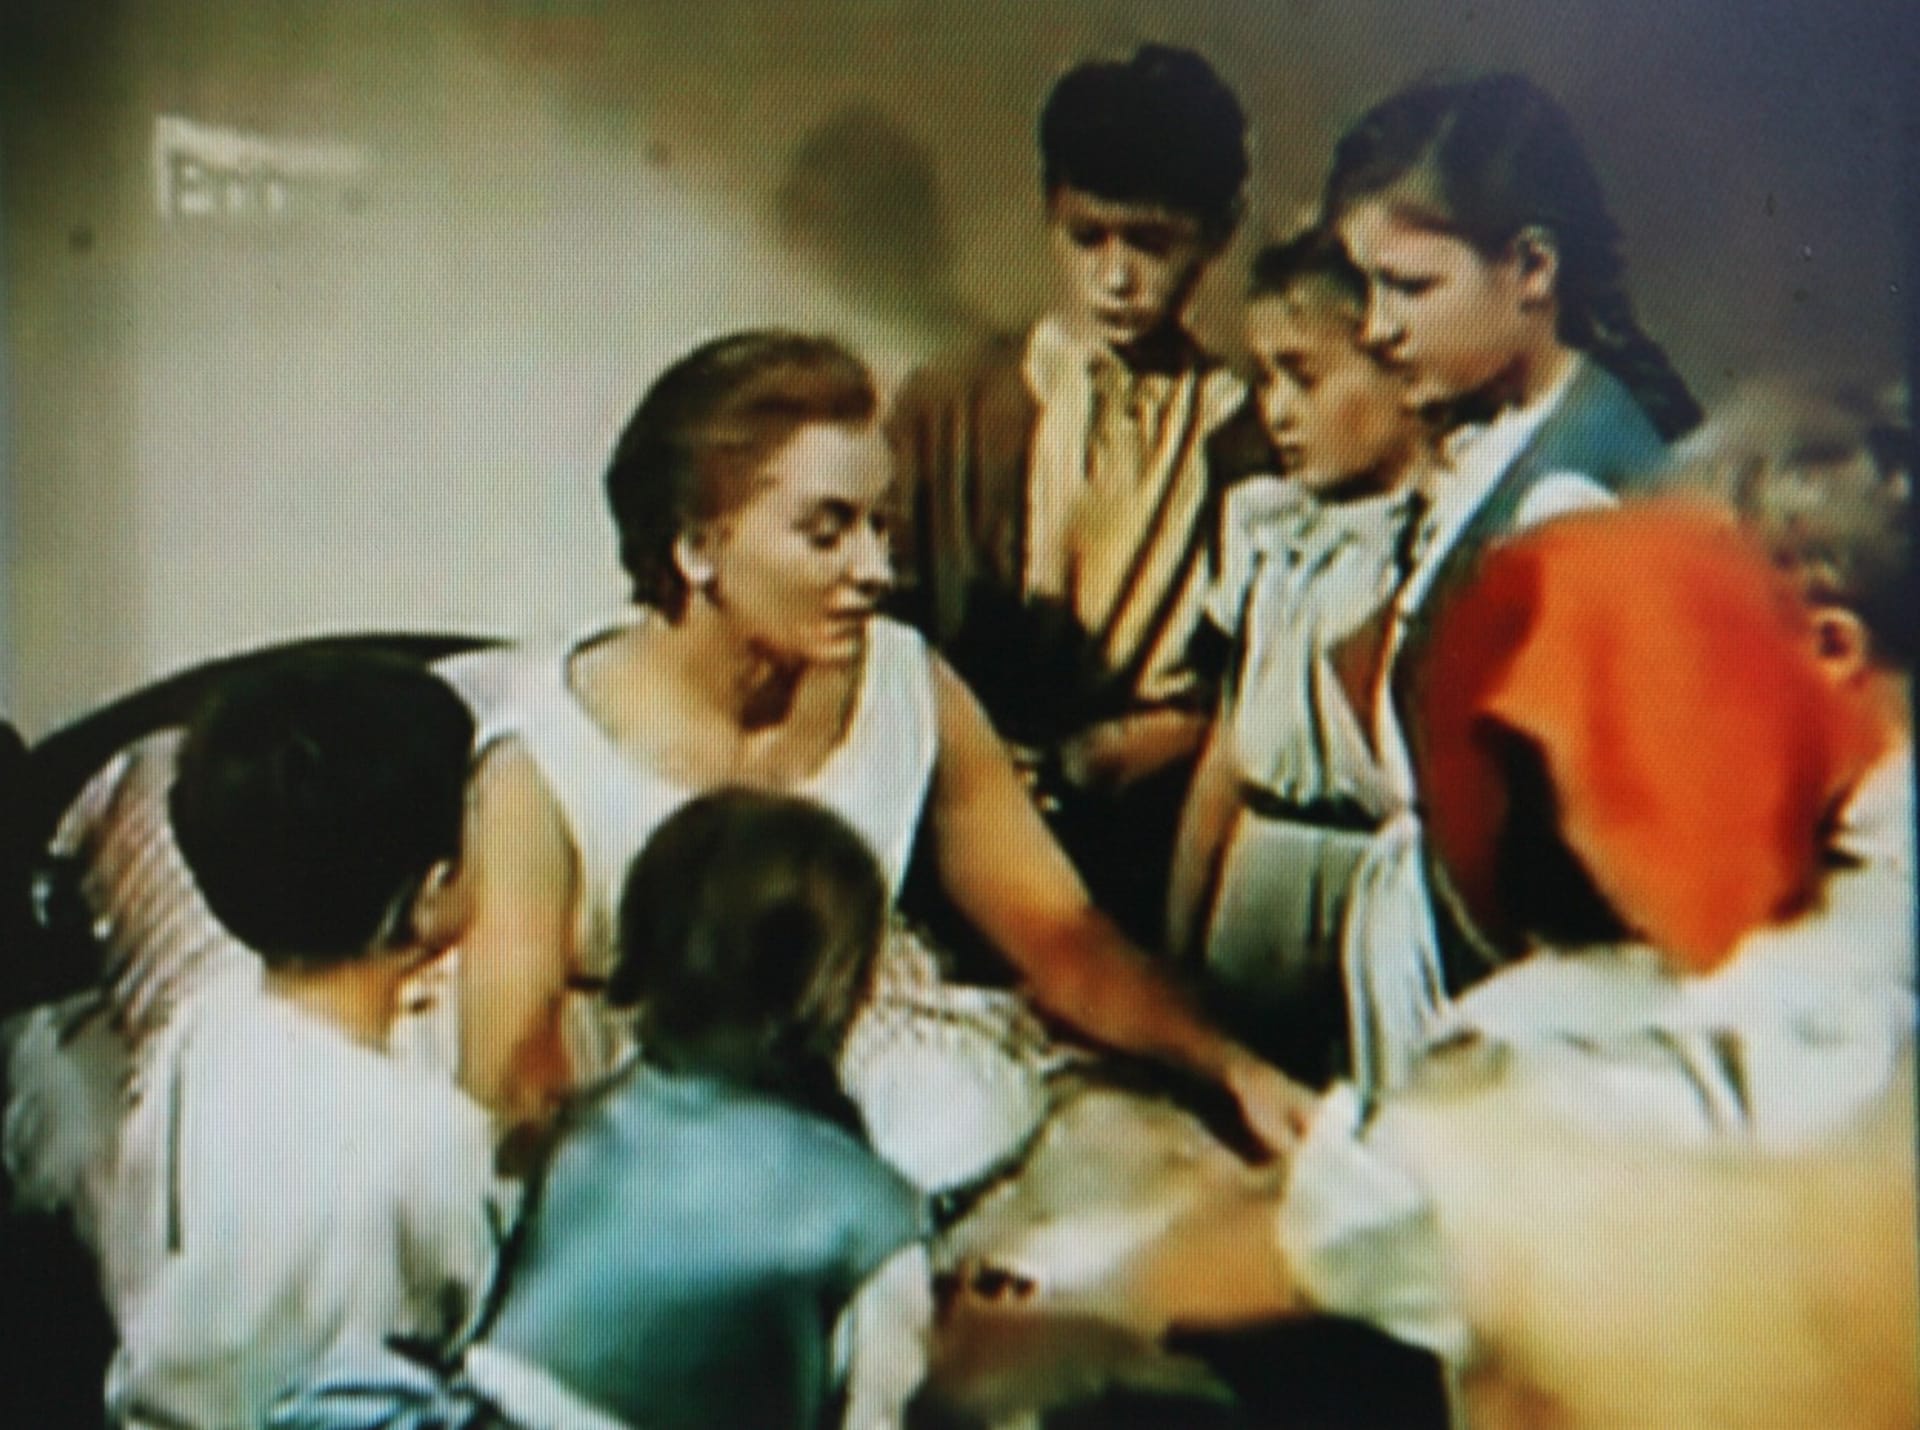 Pohádka Dařbuján a Pandrhola režiséra Martina Friče měla premiéru v roce 1960, ale dodnes se u televizních diváků těší velké oblibě.